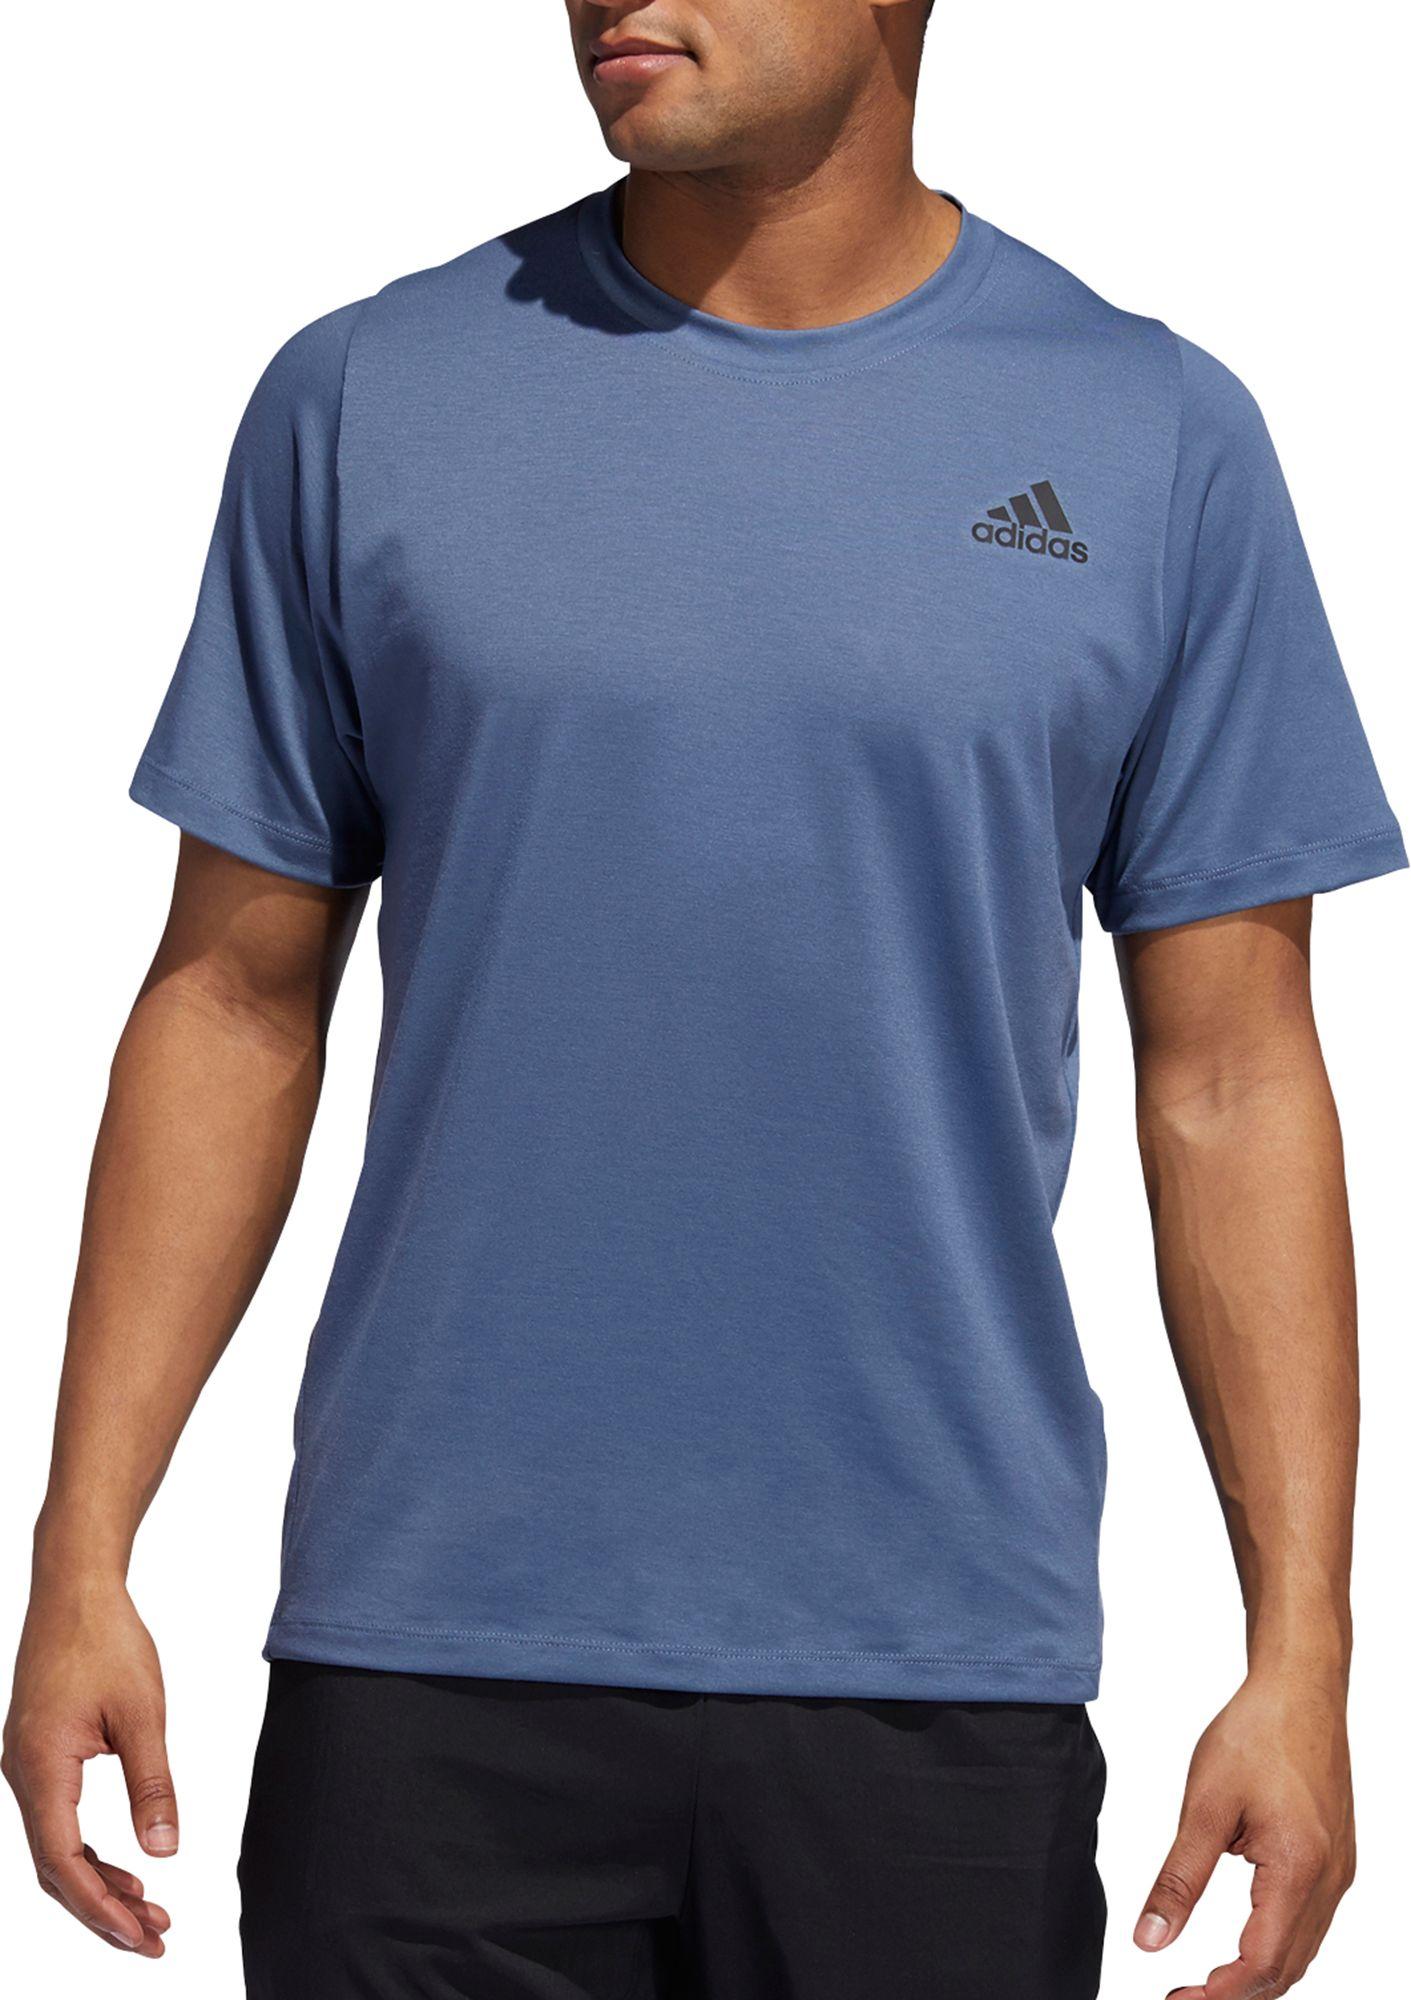 adidas Freelift Sport Prime Lite T-shirt in Blue for Men - Lyst